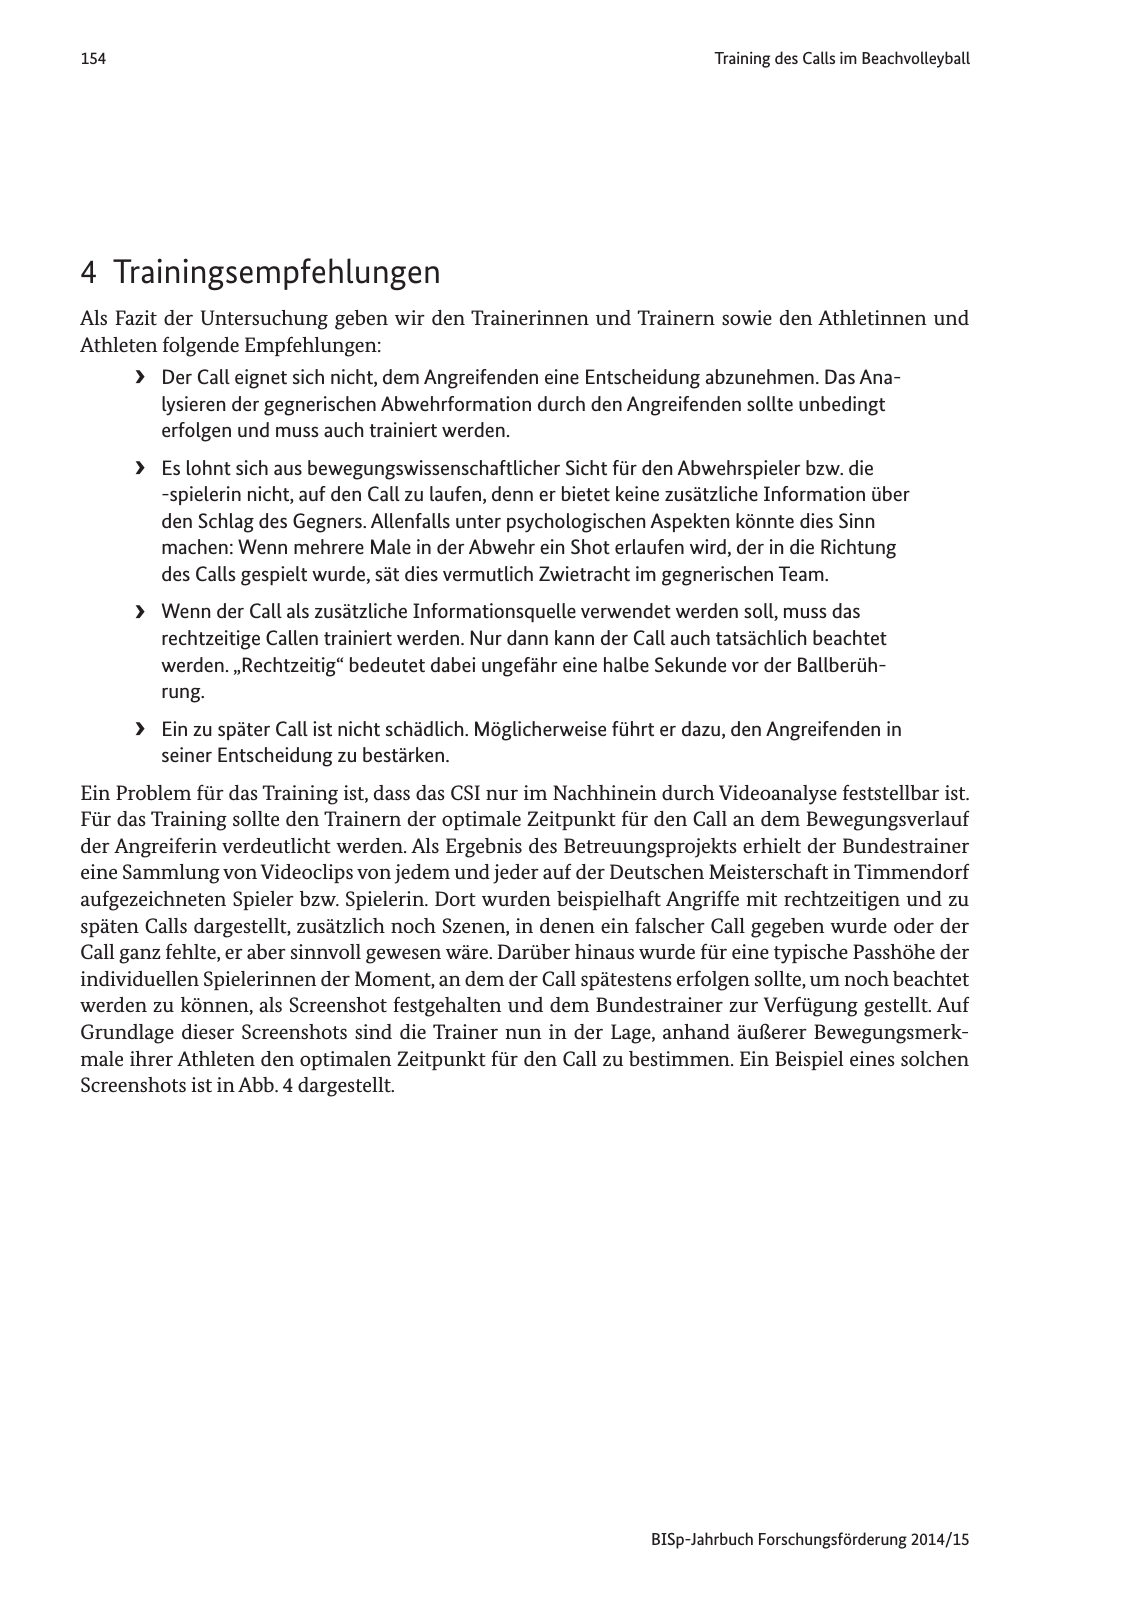 Vorschau Jahrbuch 2014/15 Seite 155